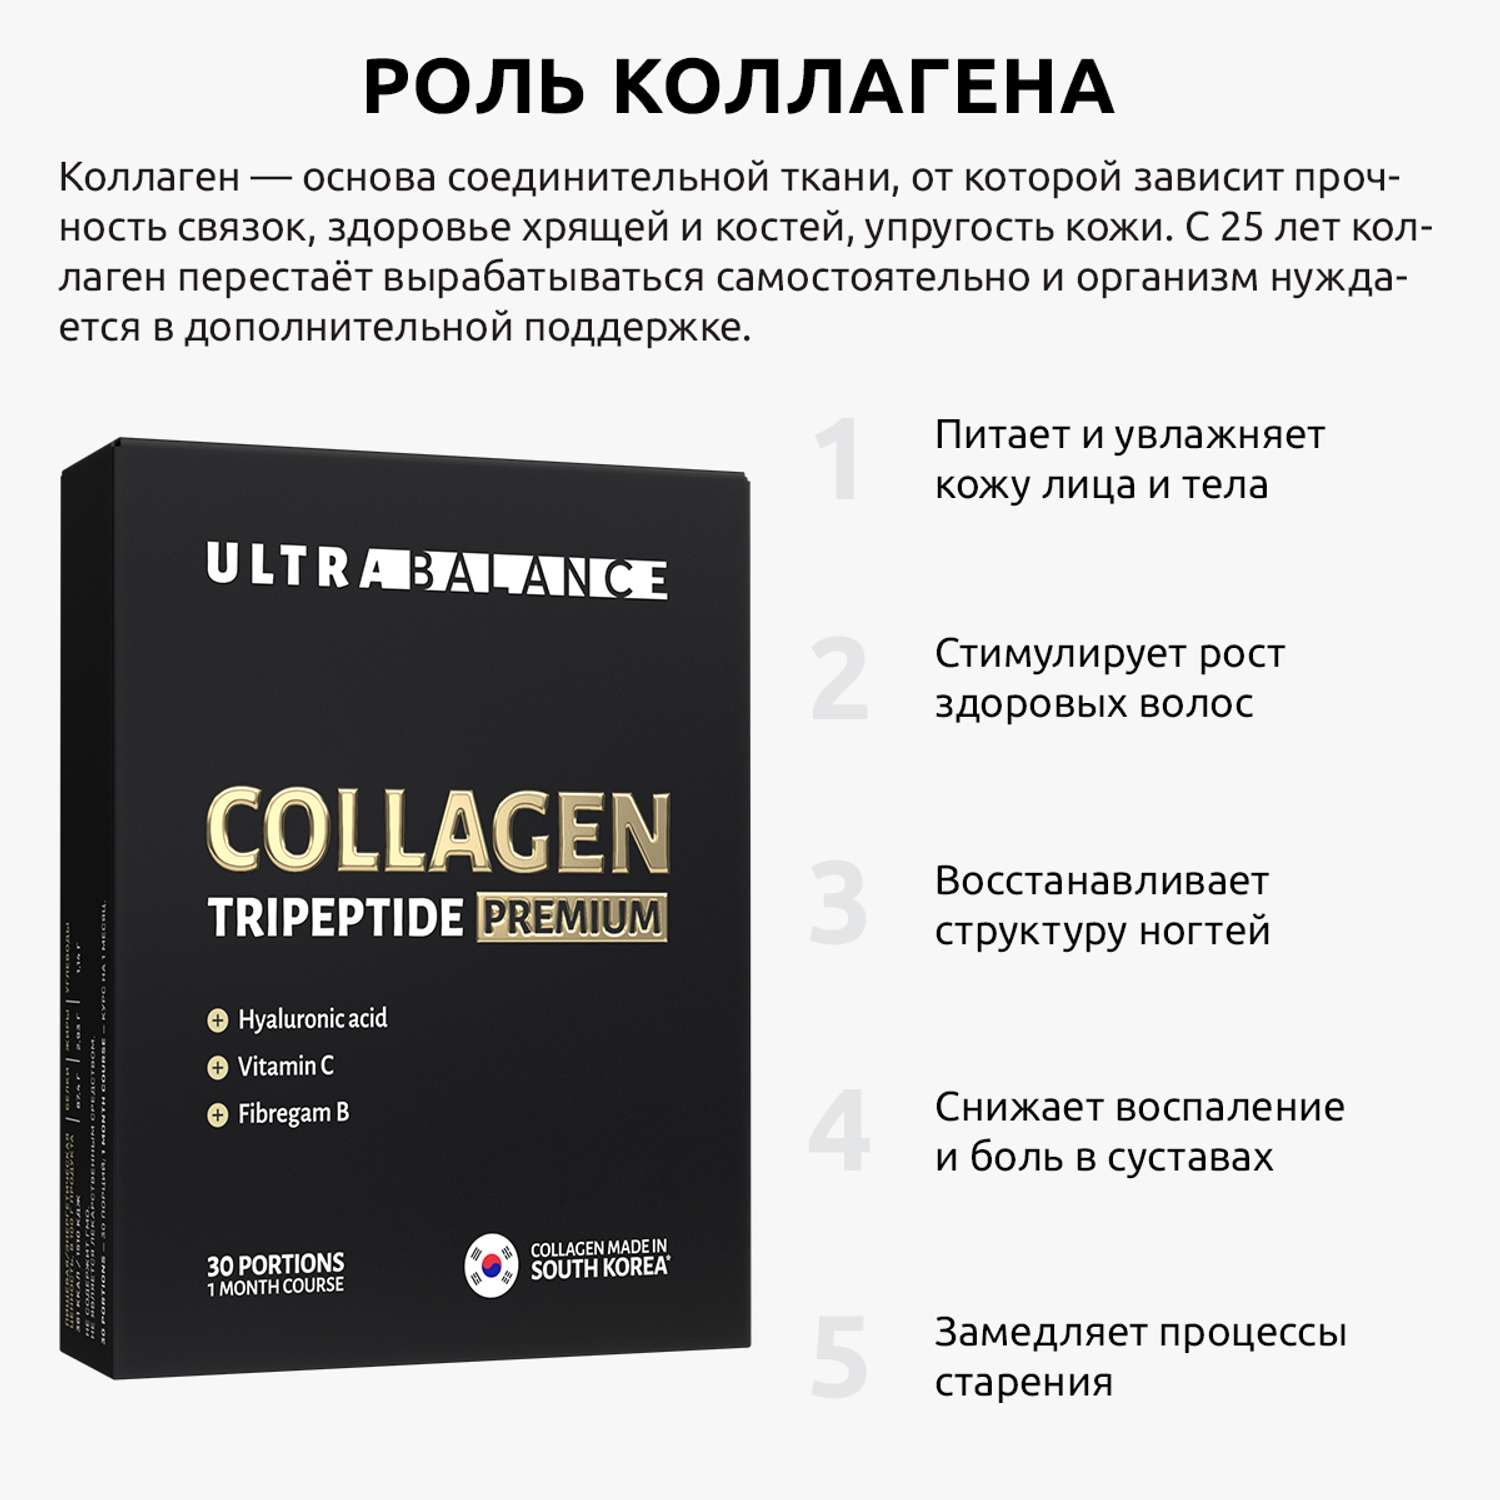 Коллаген морской порошок UltraBalance низкомолекулярный Collagen Tripeptide БАД 30саше с витамином С и гиалуроновой кислотой - фото 2